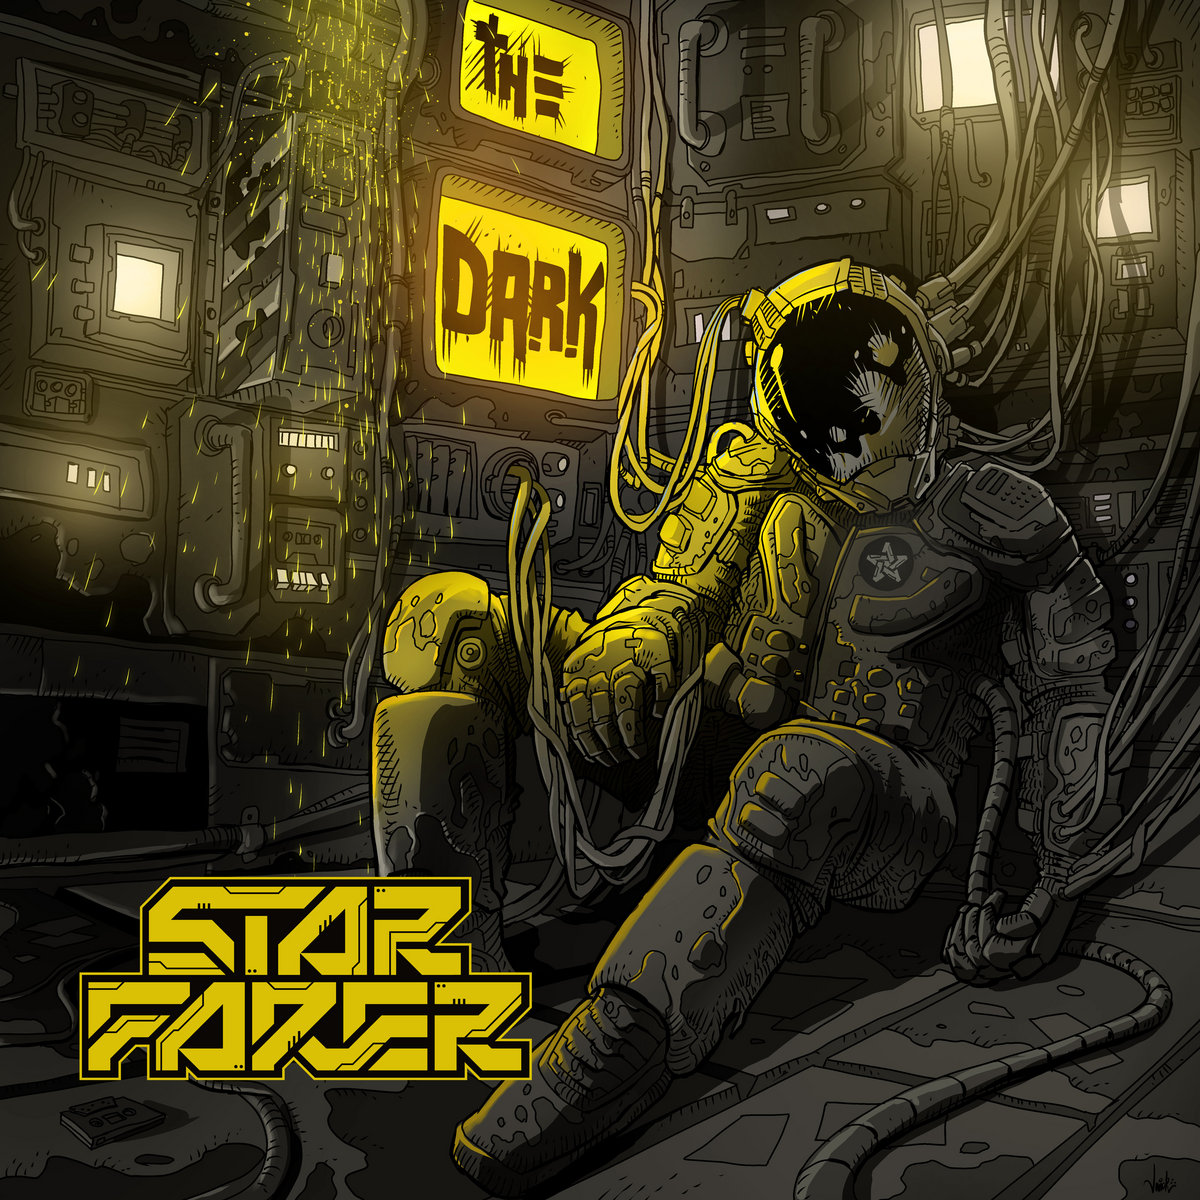 a0616680429 10 - Starfarer drops 4th album ‘The Dark’